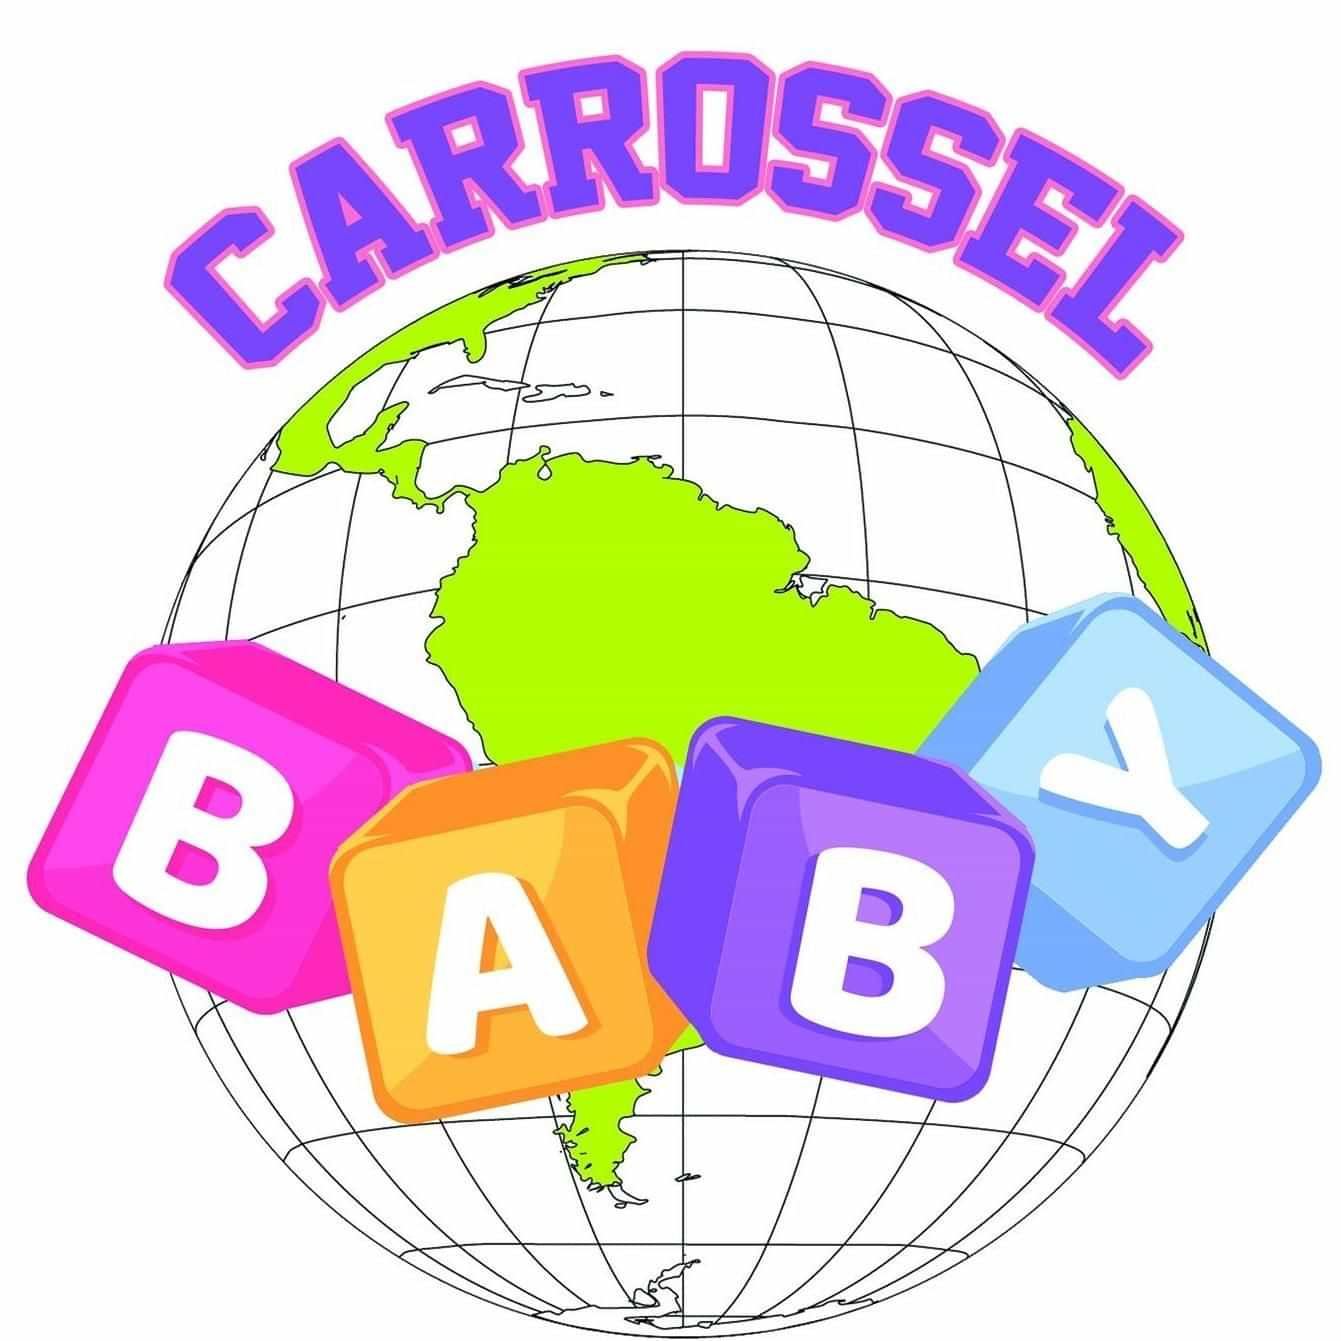  Cei Carrossel Baby 